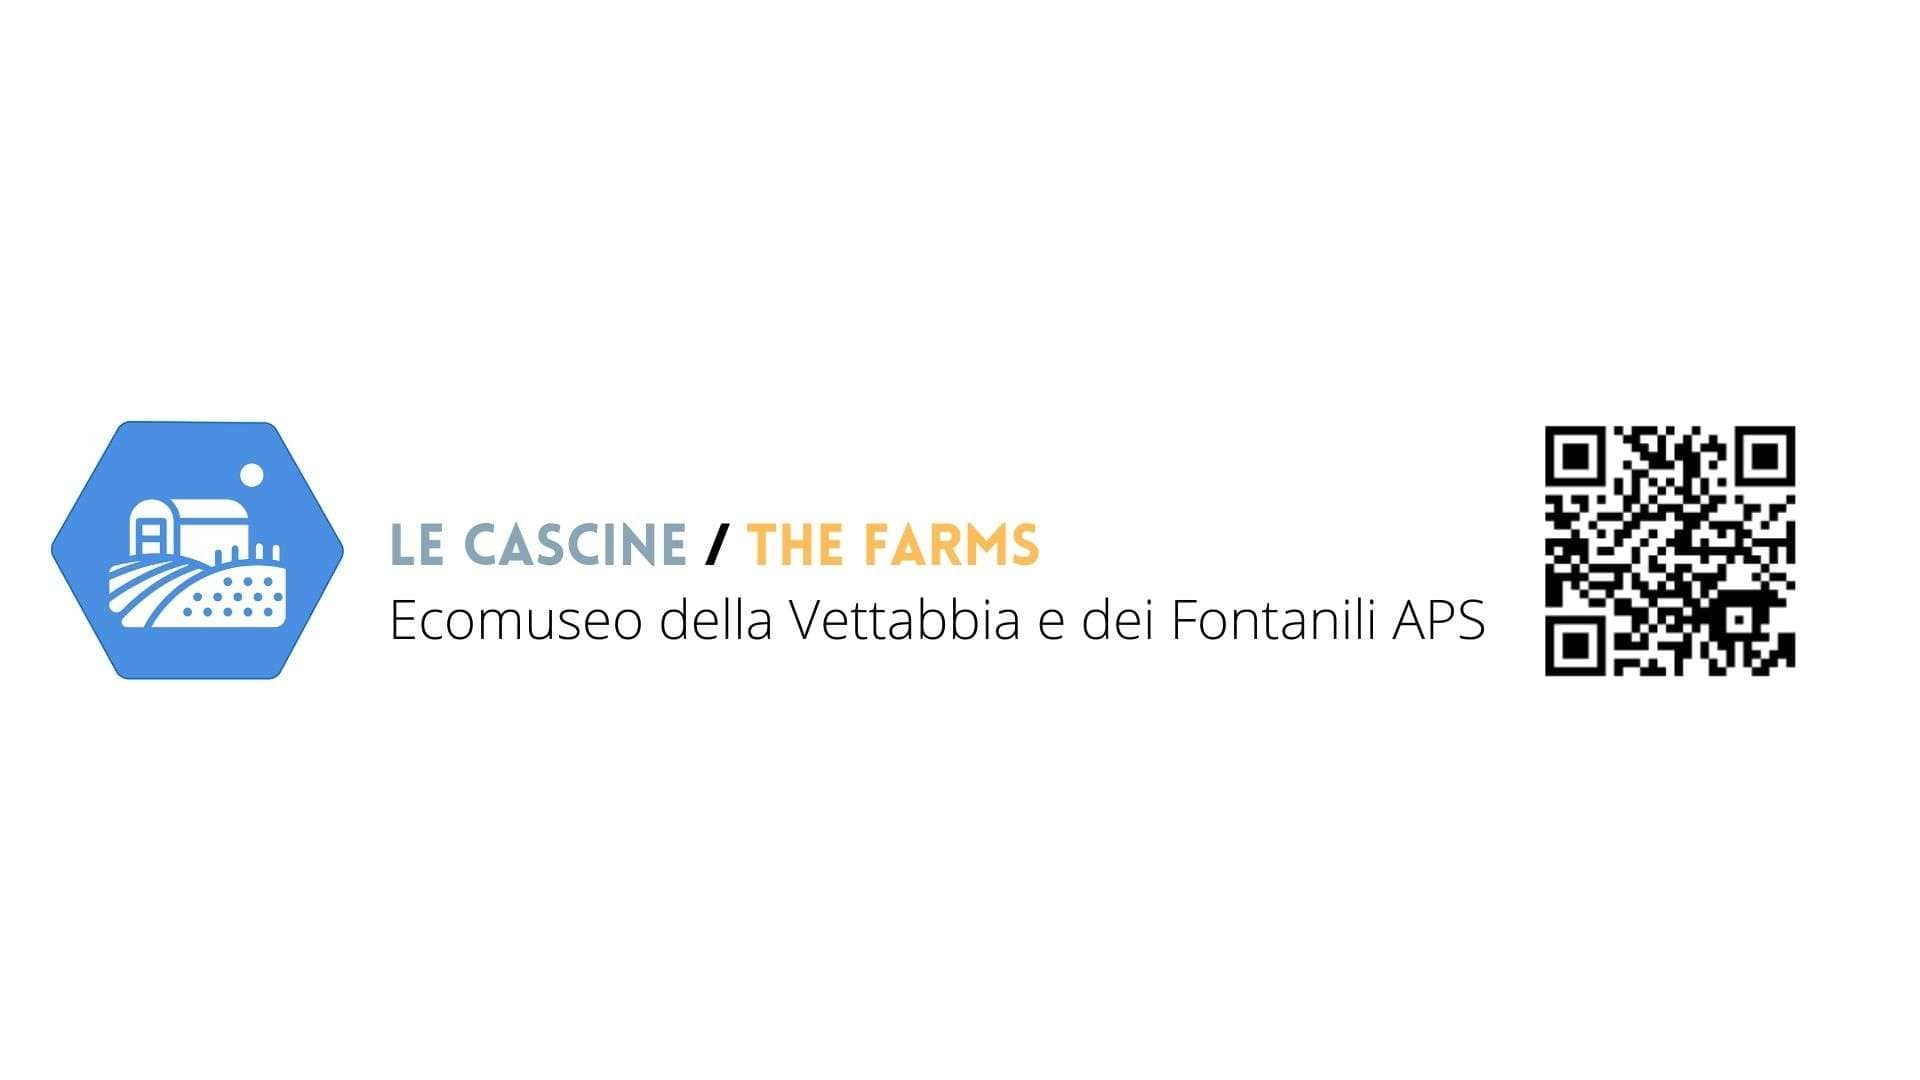 Le Cascine - The Farms - Ecomuseo della vettabbia e dei Fontanili APS